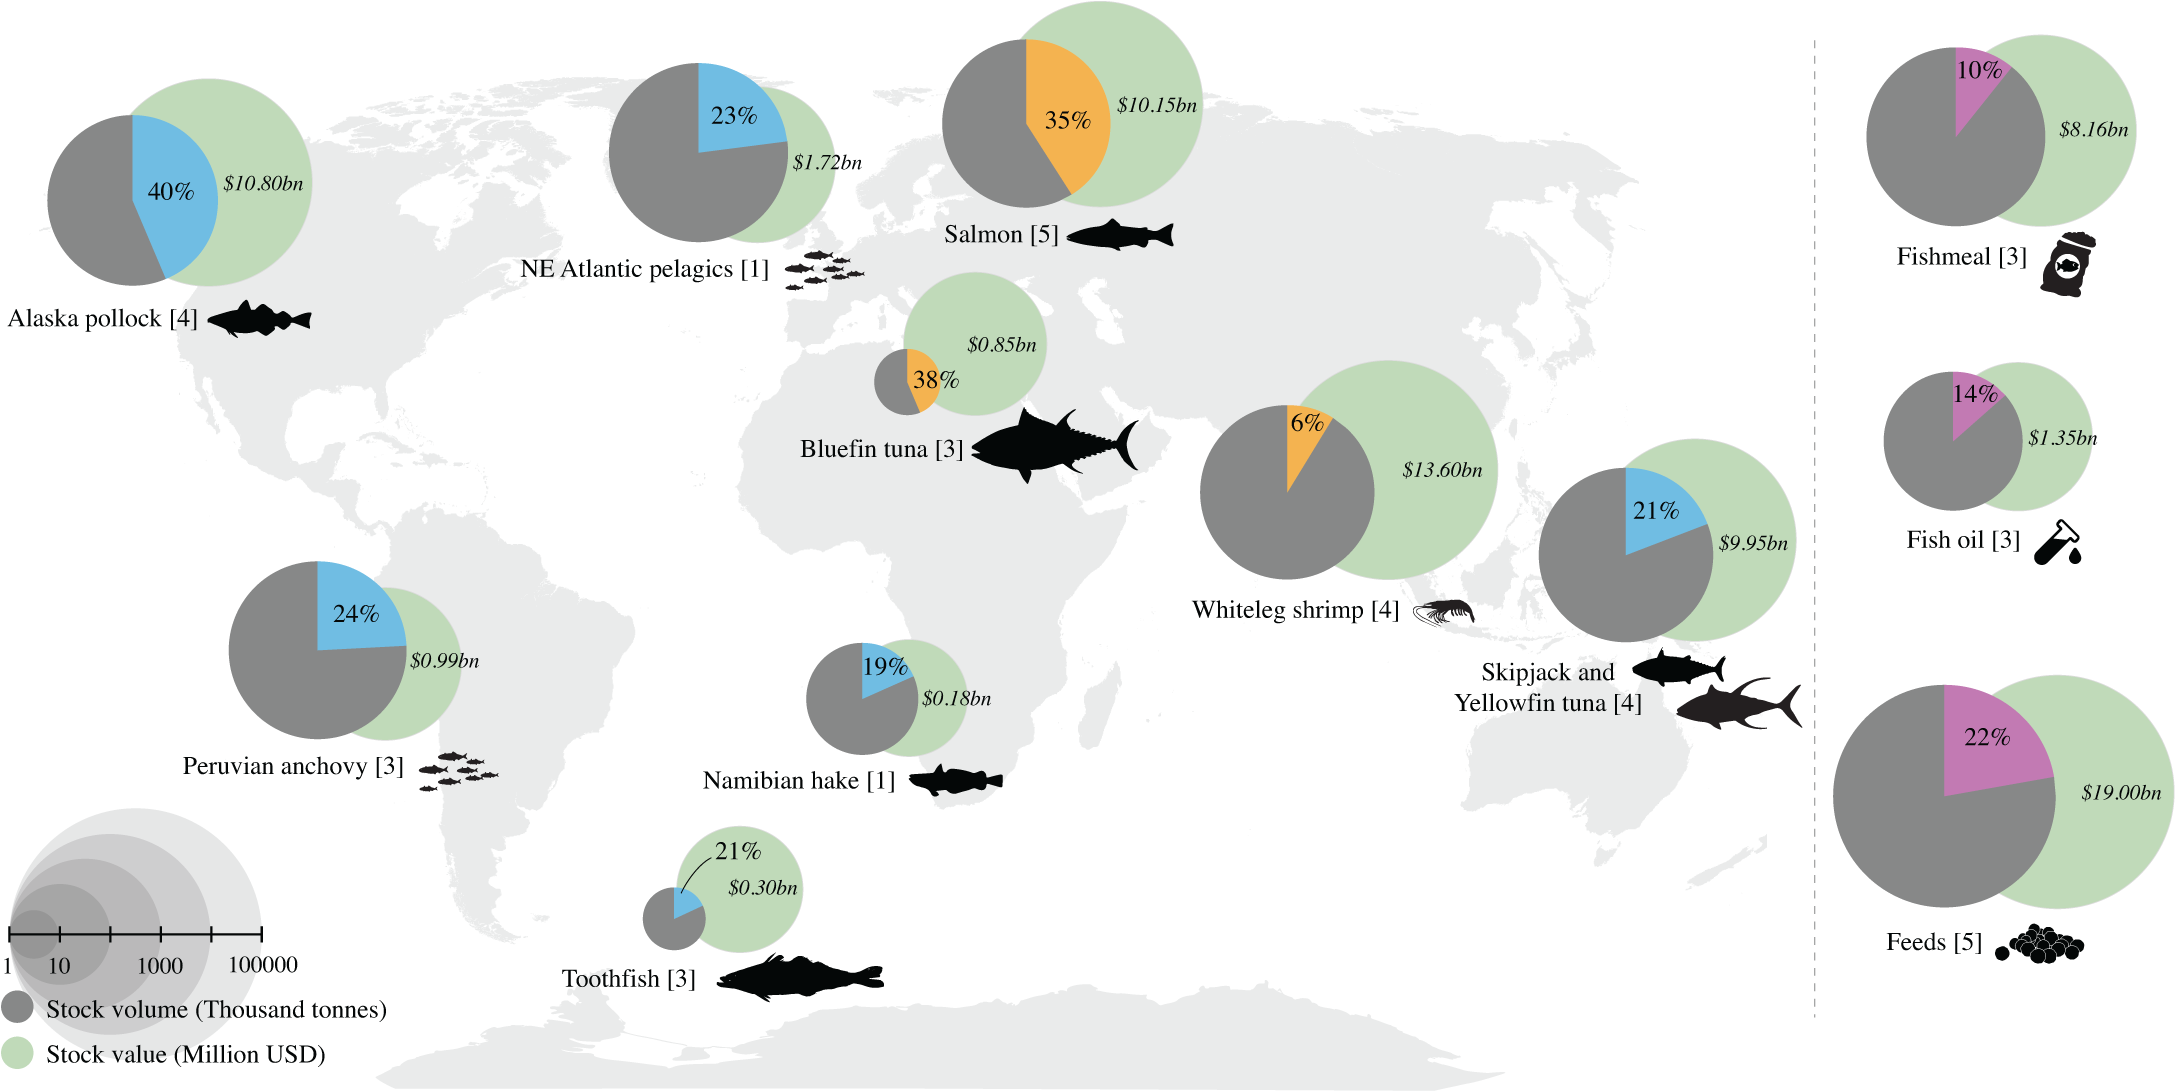 Globale hovedaktører (III) Oversikt over volum av villfiskbestander (markert i blått), oppdrett (markert i oransje), og global fiskemel, fiskeolje og for (markert i lilla), og deres tilsvarende